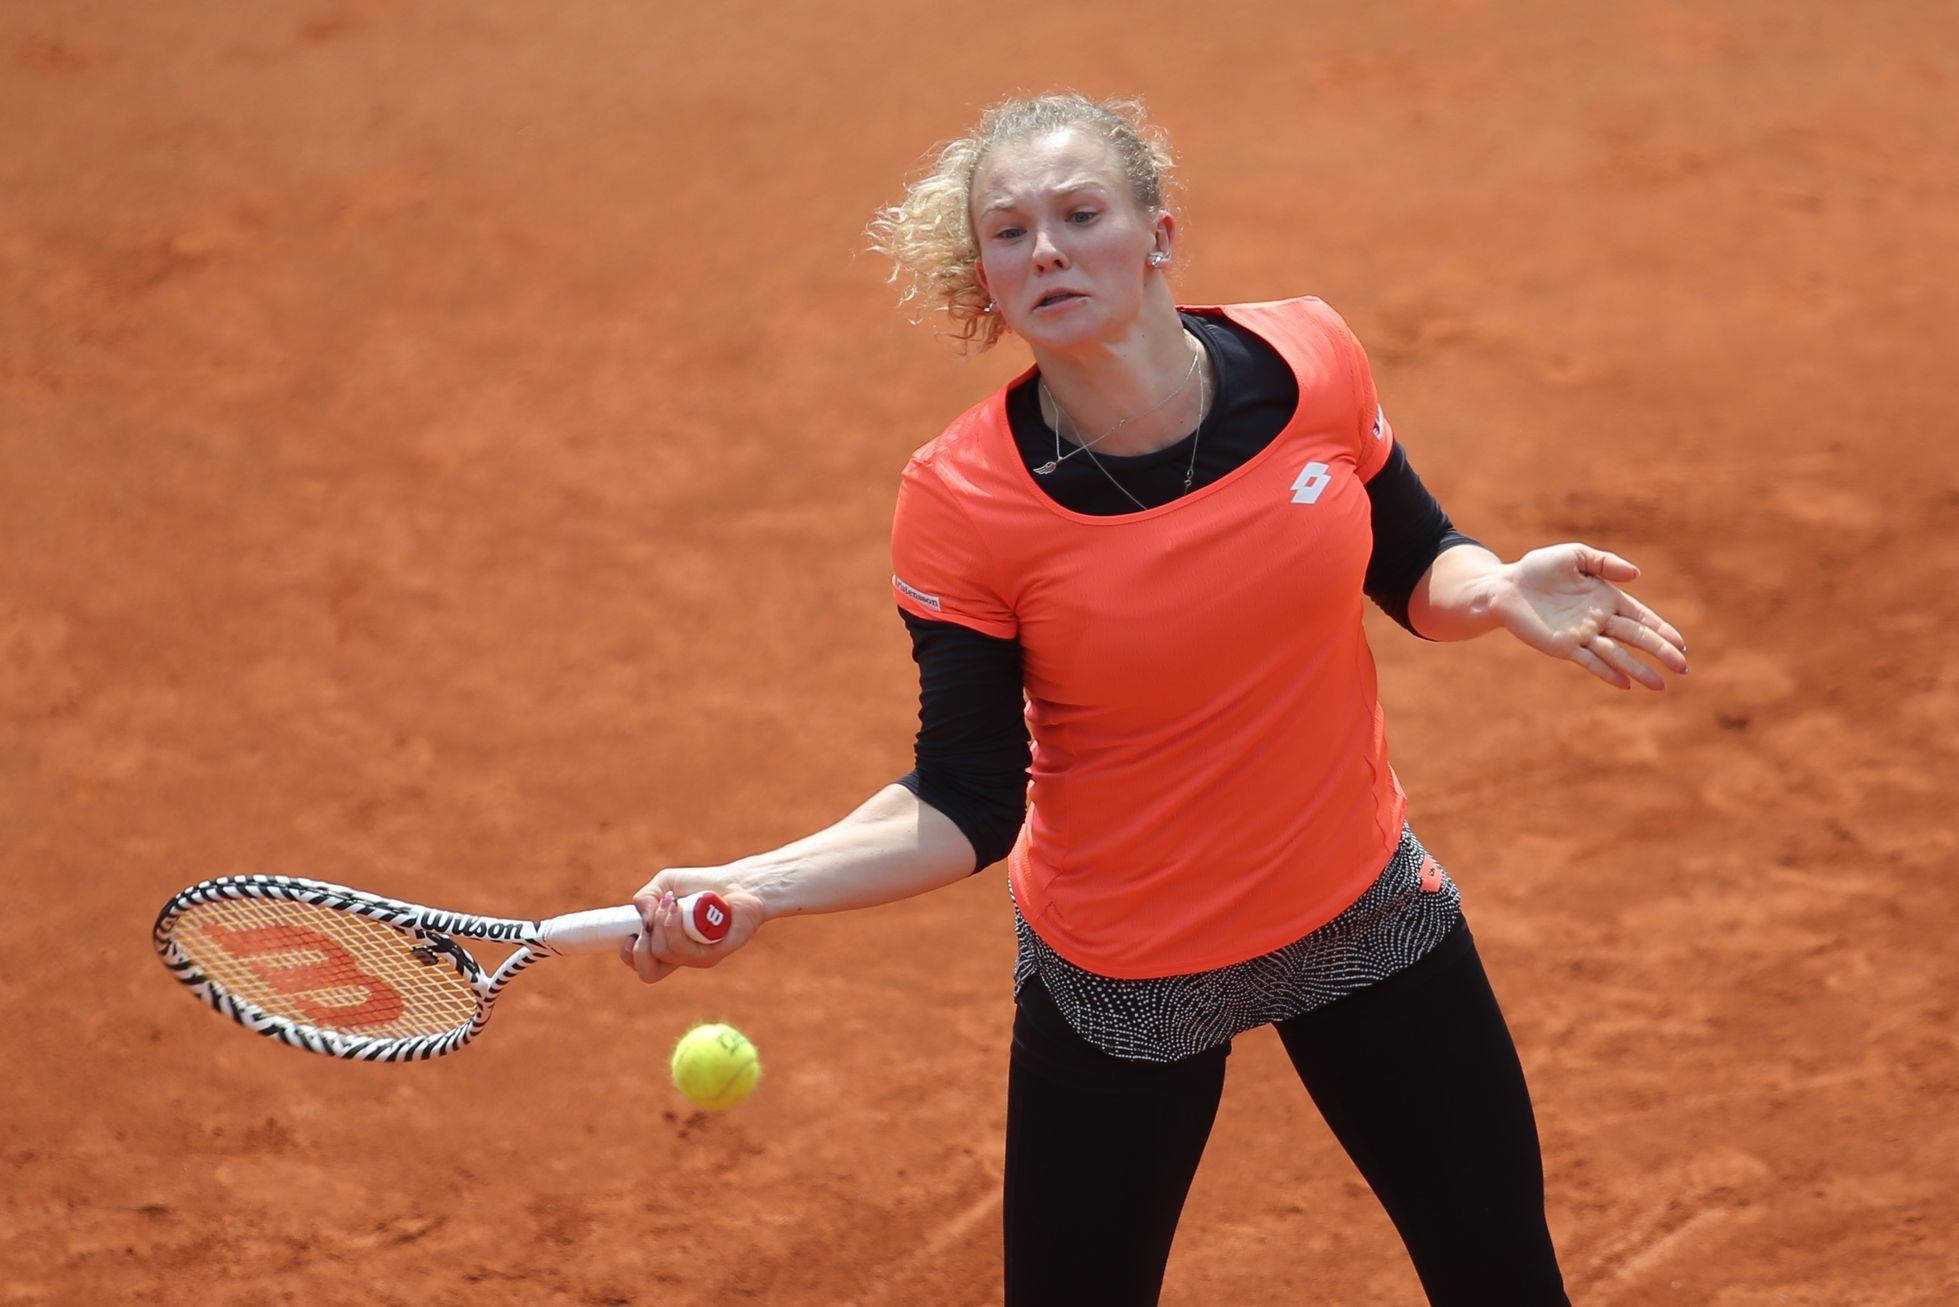 Kateřina Siniaková na Prague Open 2019